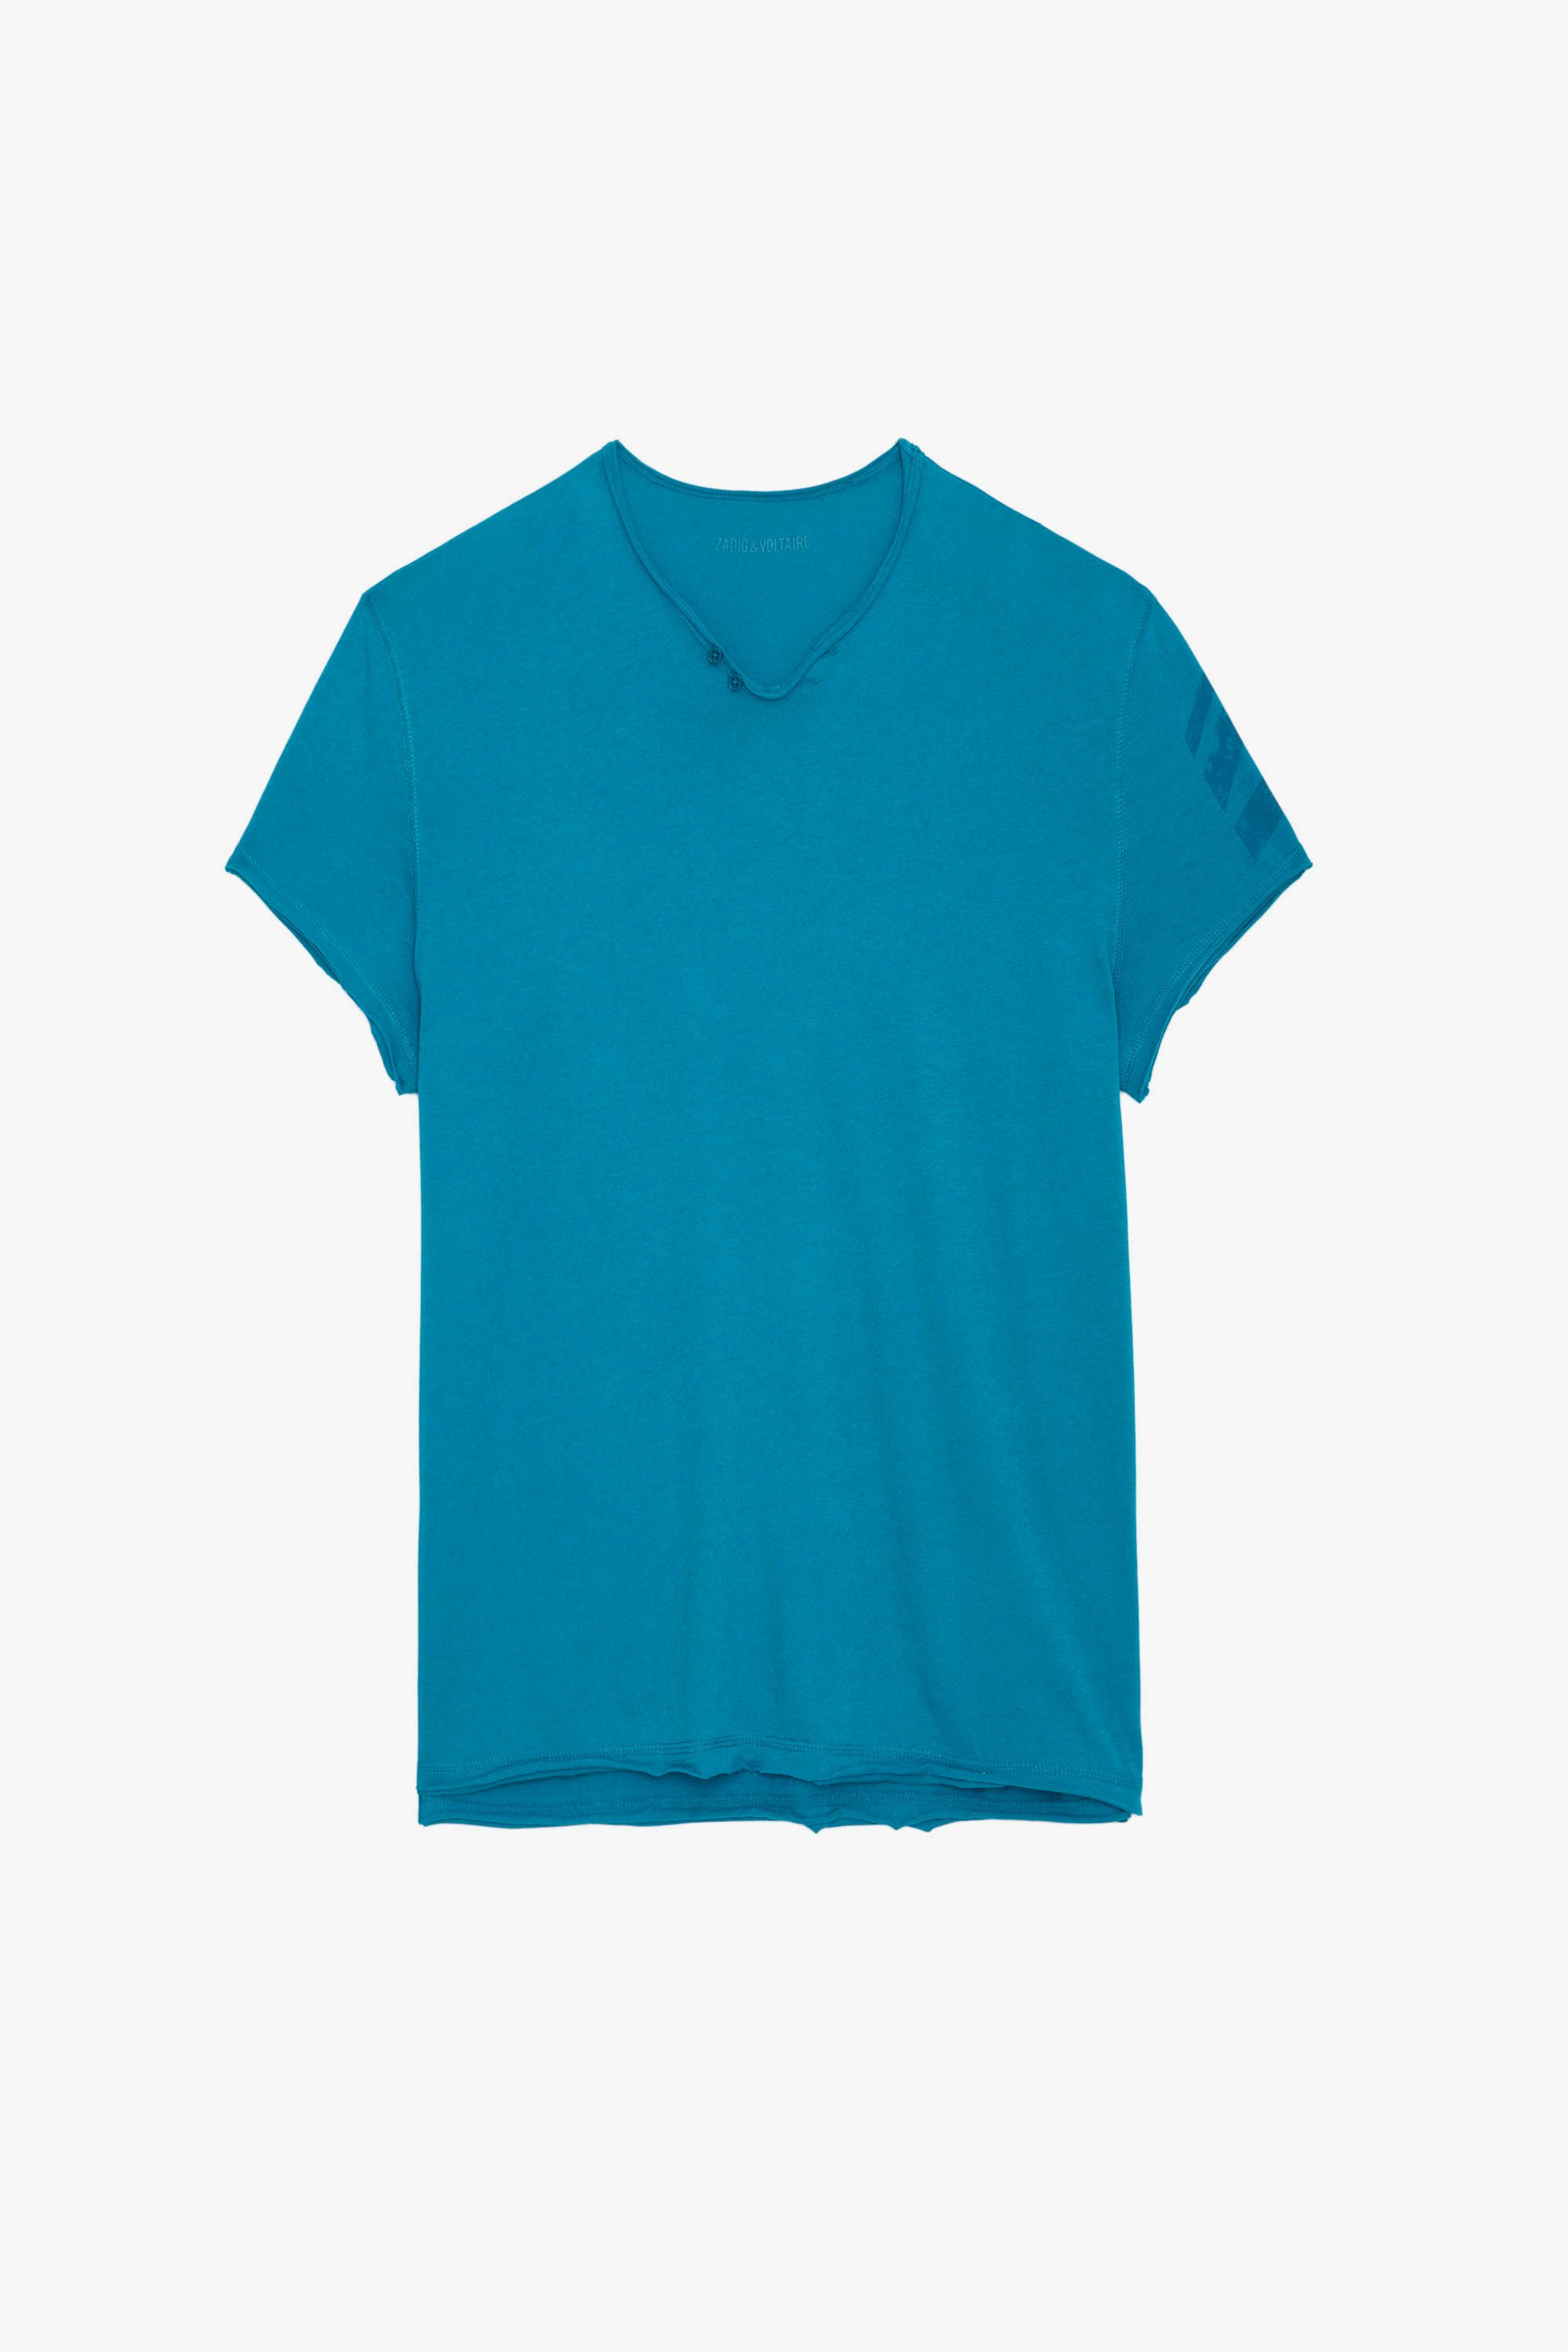 Serafino Monasti Arrow - T-shirt con collo a serafino in cotone turchese con maniche corte e frecce sulla manica sinistra.